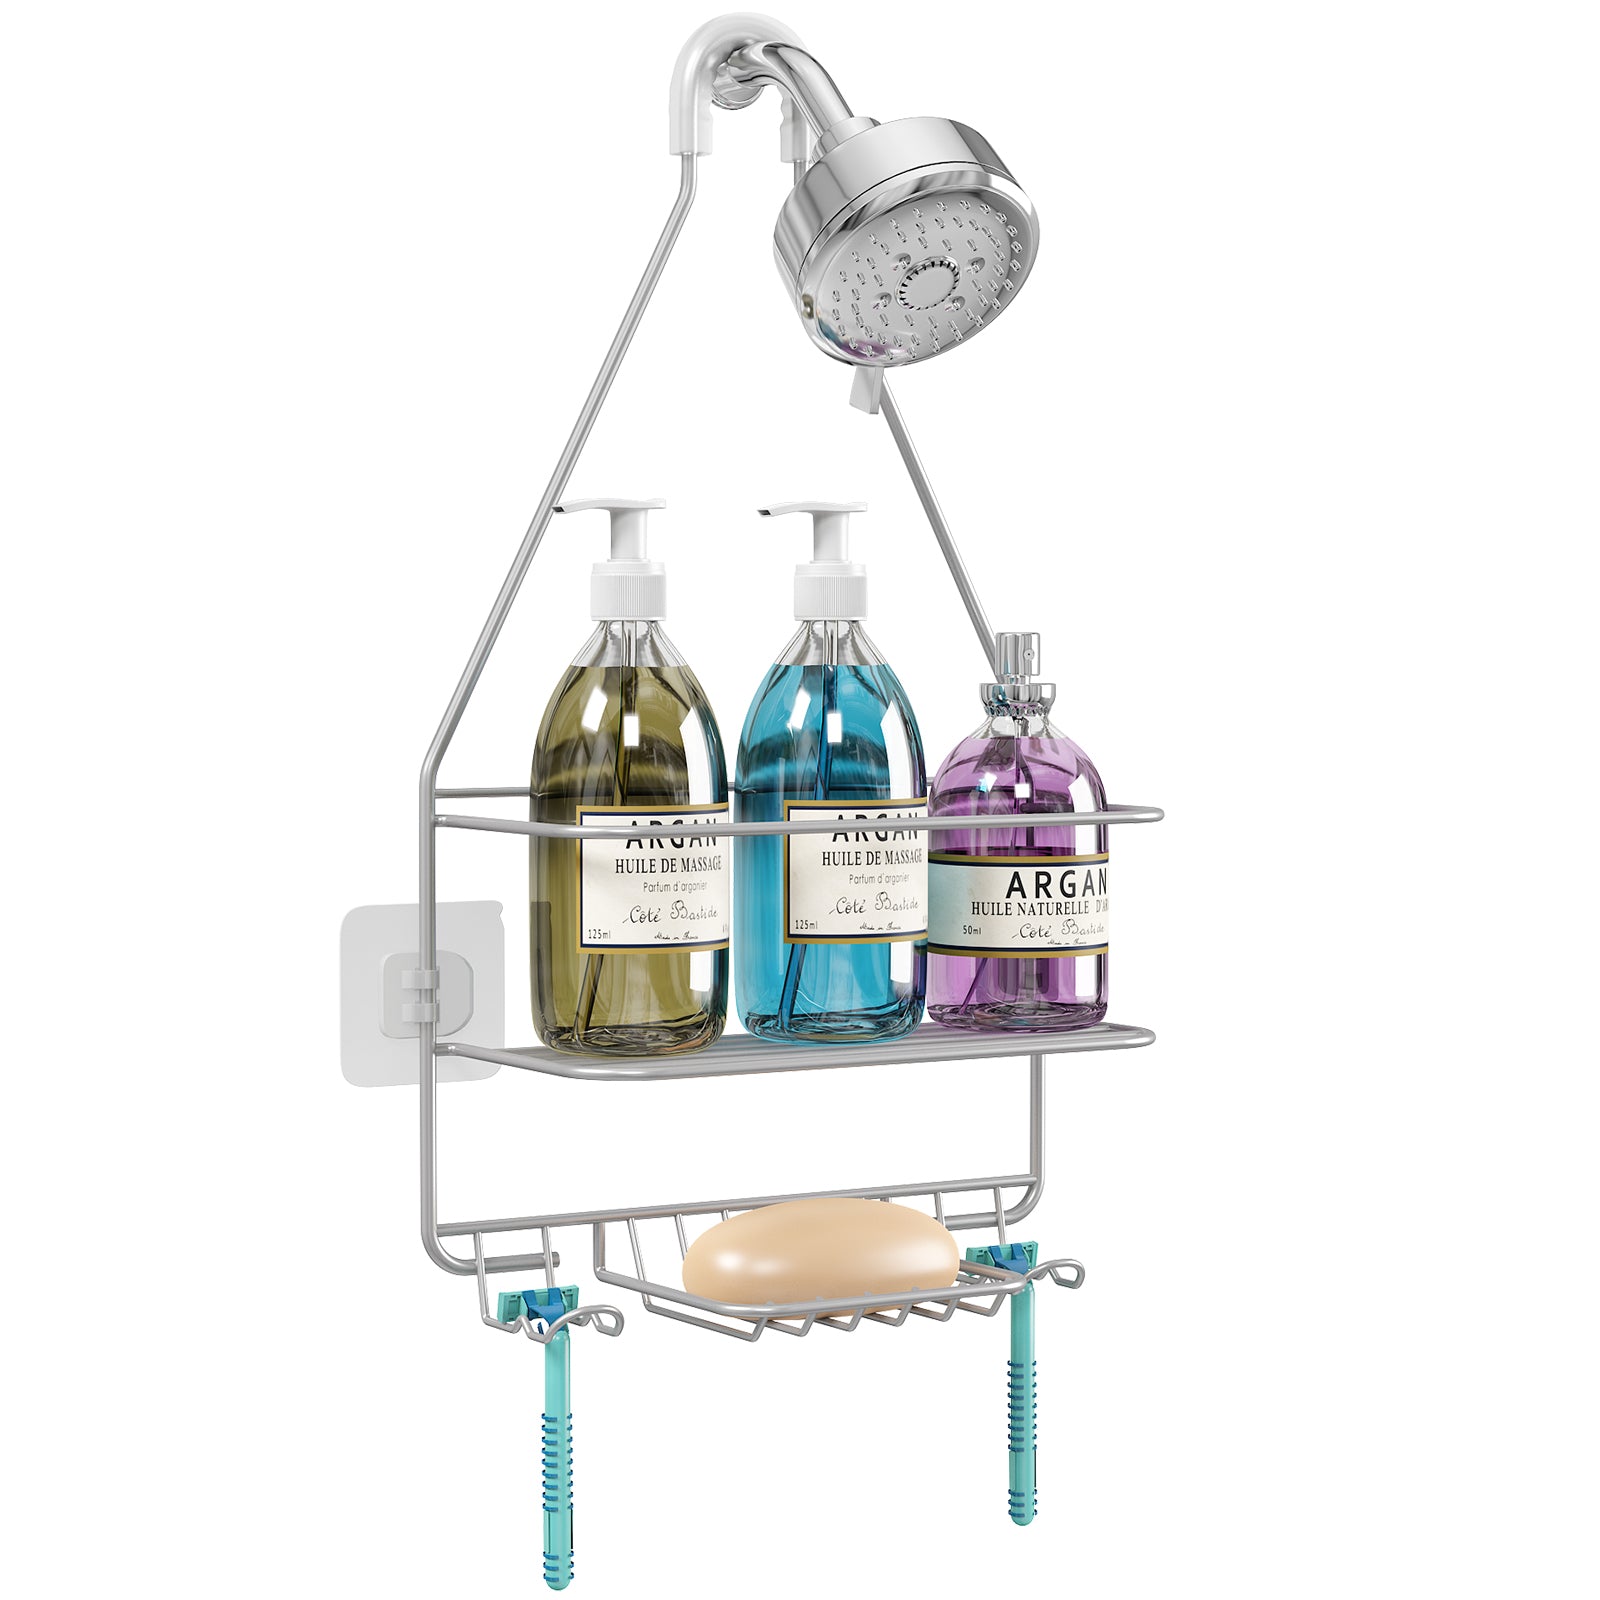 CIVG Shower Caddy Shelf for Slide Bar Detachable Shower Rack Organizer with  2 Hooks Adjustable Bathroom Shampoo Soap Holder Punch Free Shower Storage